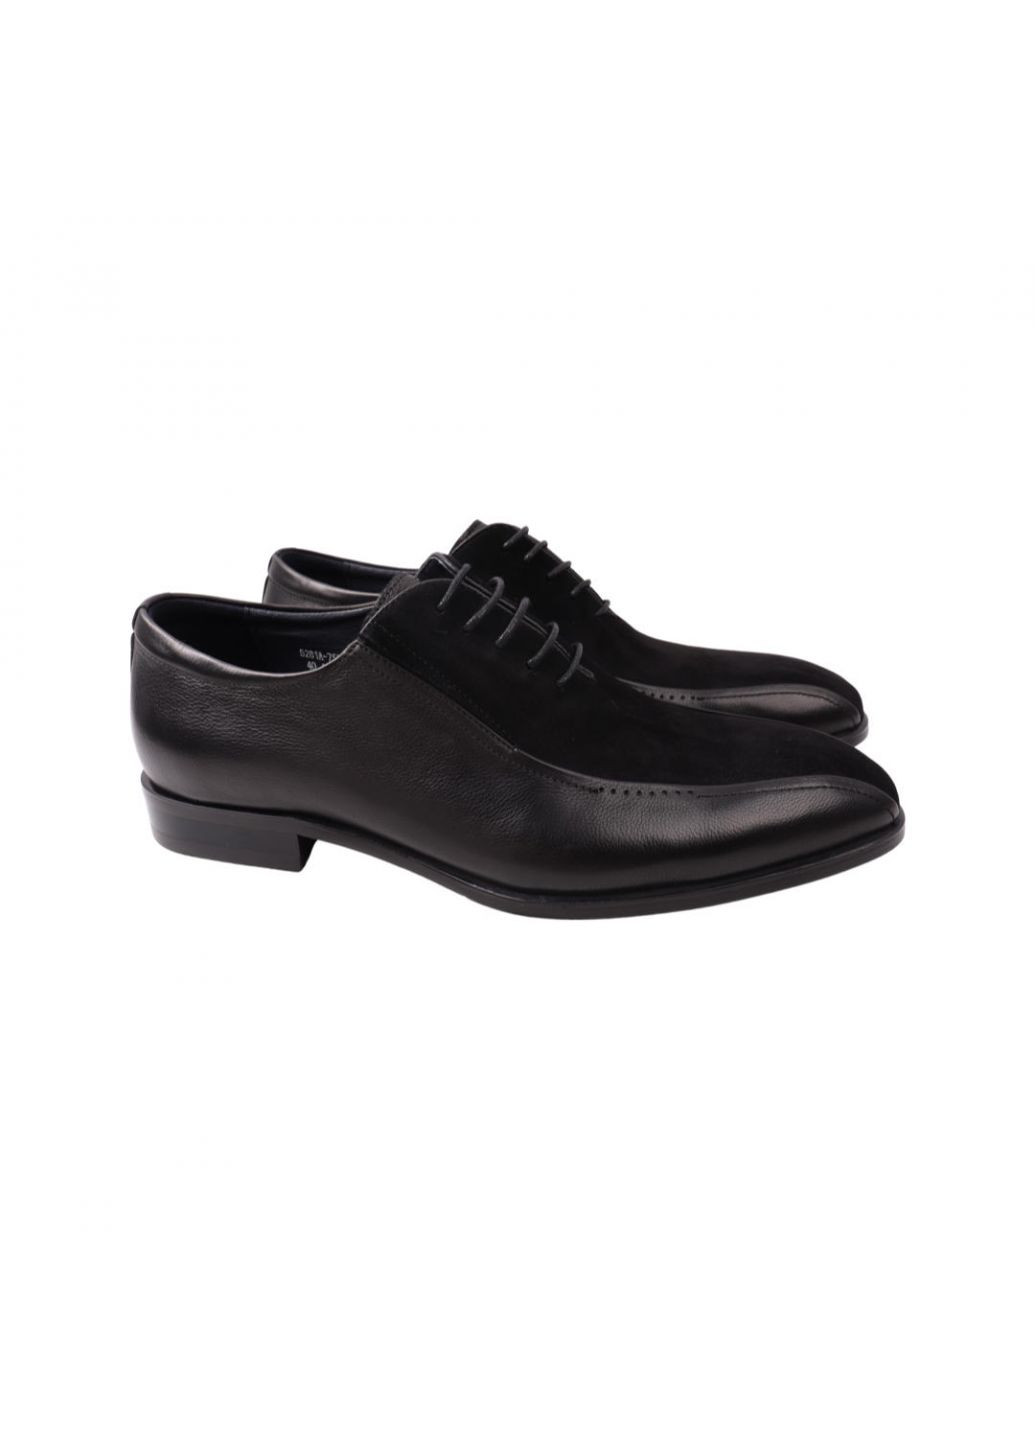 Туфлі чоловічі Lido Marinozi чорні натуральна шкіра Lido Marinozzi 226-21dt (257438145)